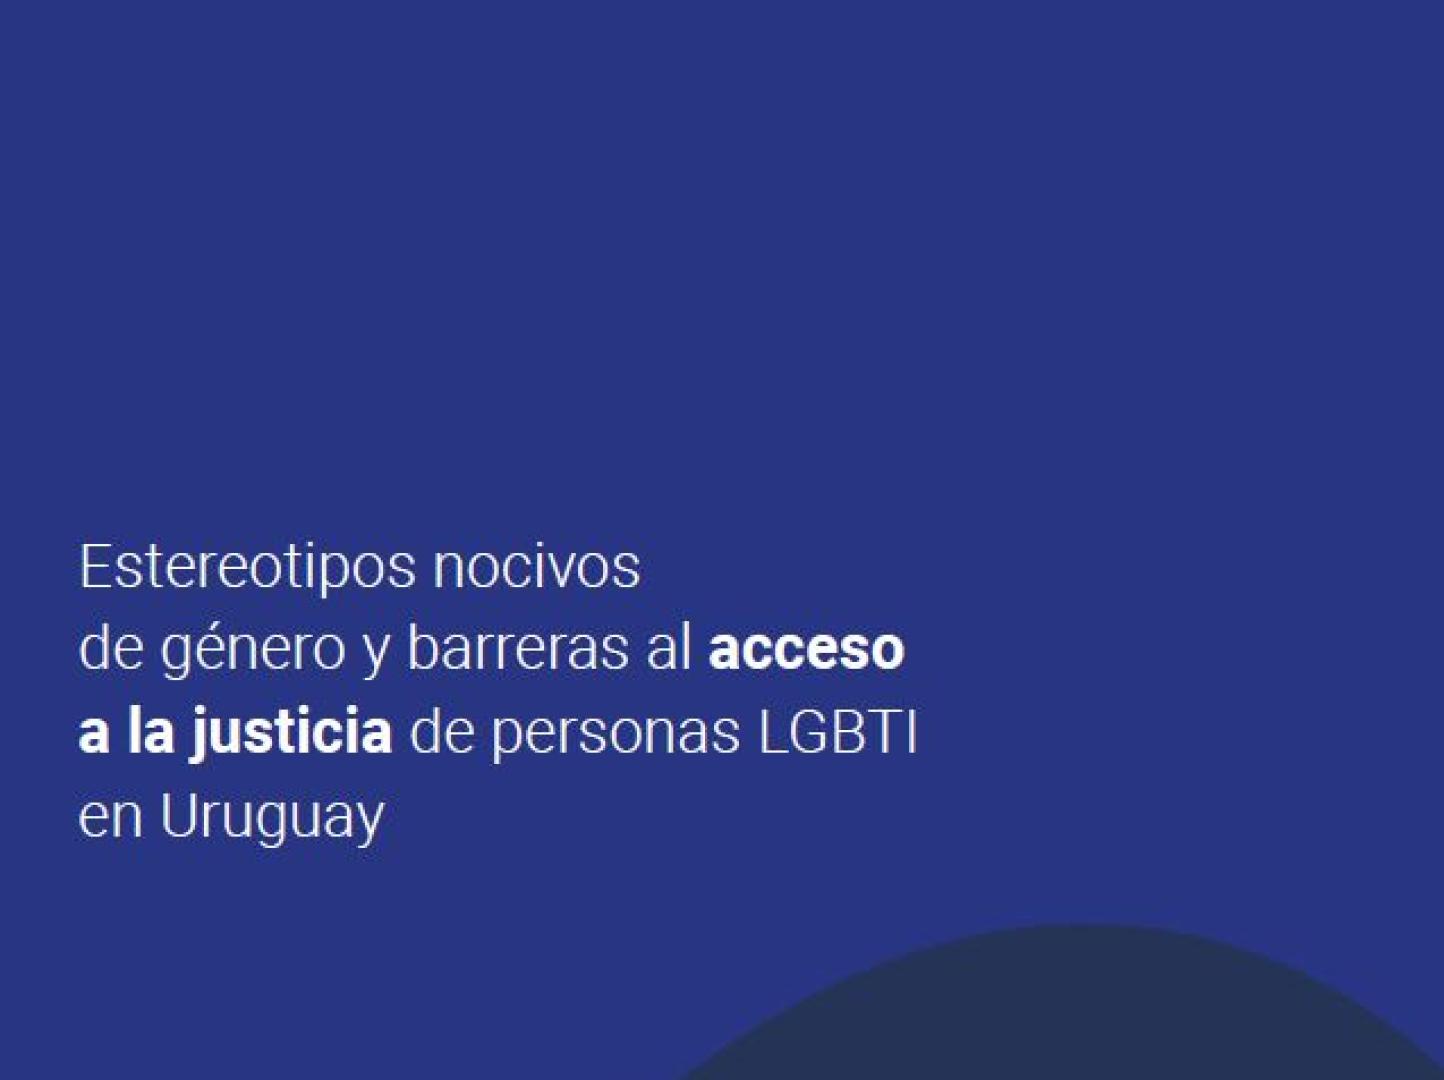 Portada de la publicación: estereotipos nocivos de género y barreras al acceso a la justicia de personas LGBTI en Uruguay